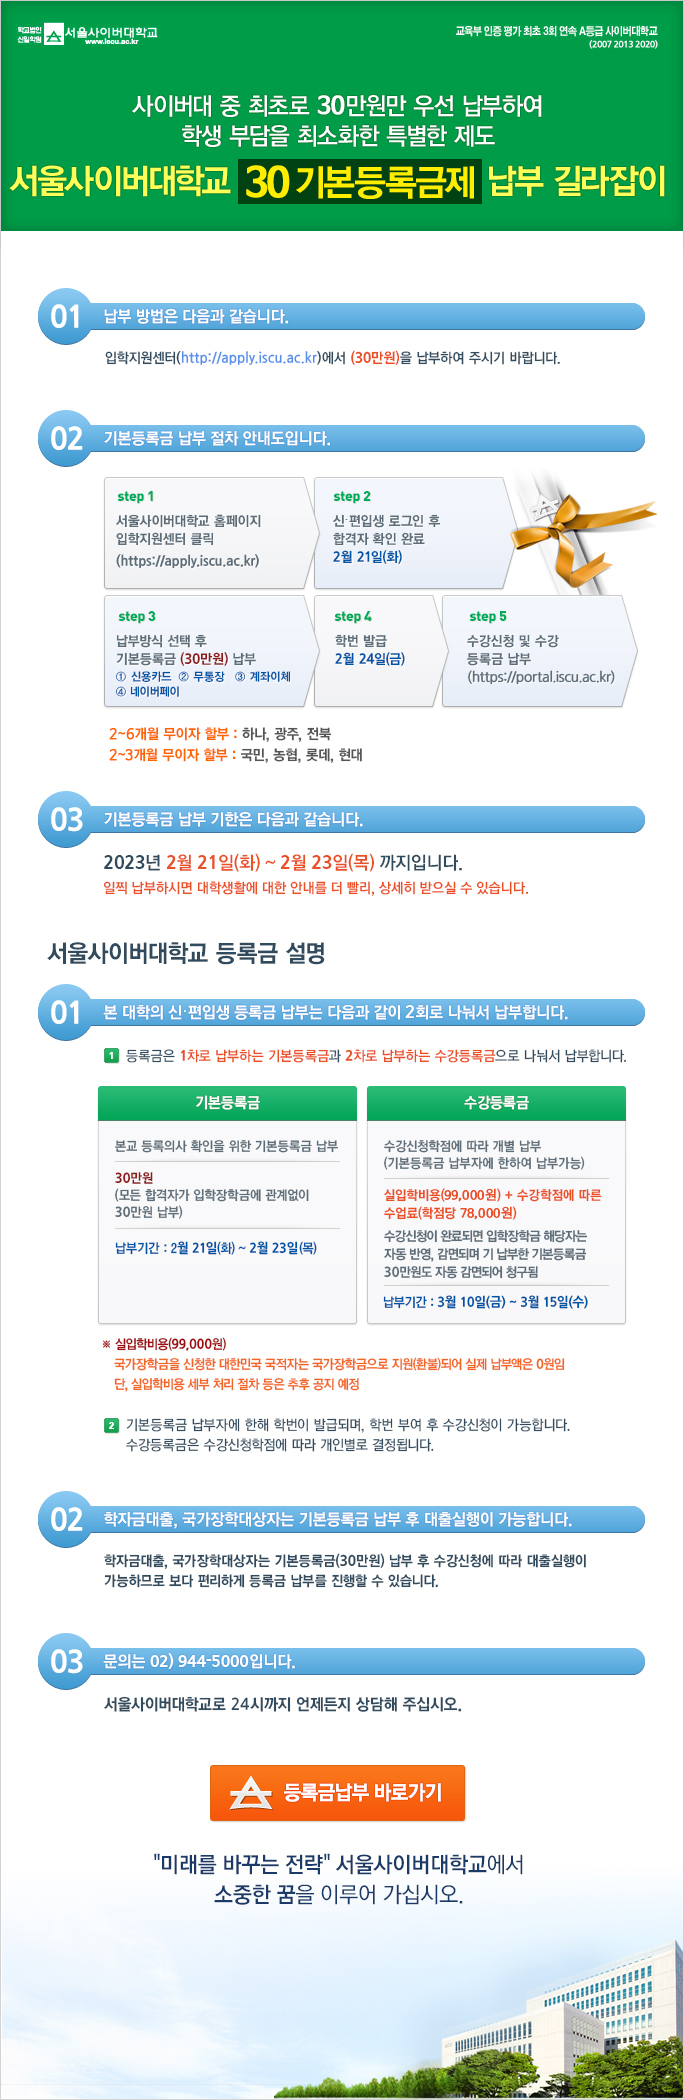 서울사이버대학교 30 기본등록금제 납부 길라잡이 - 아래내용참조